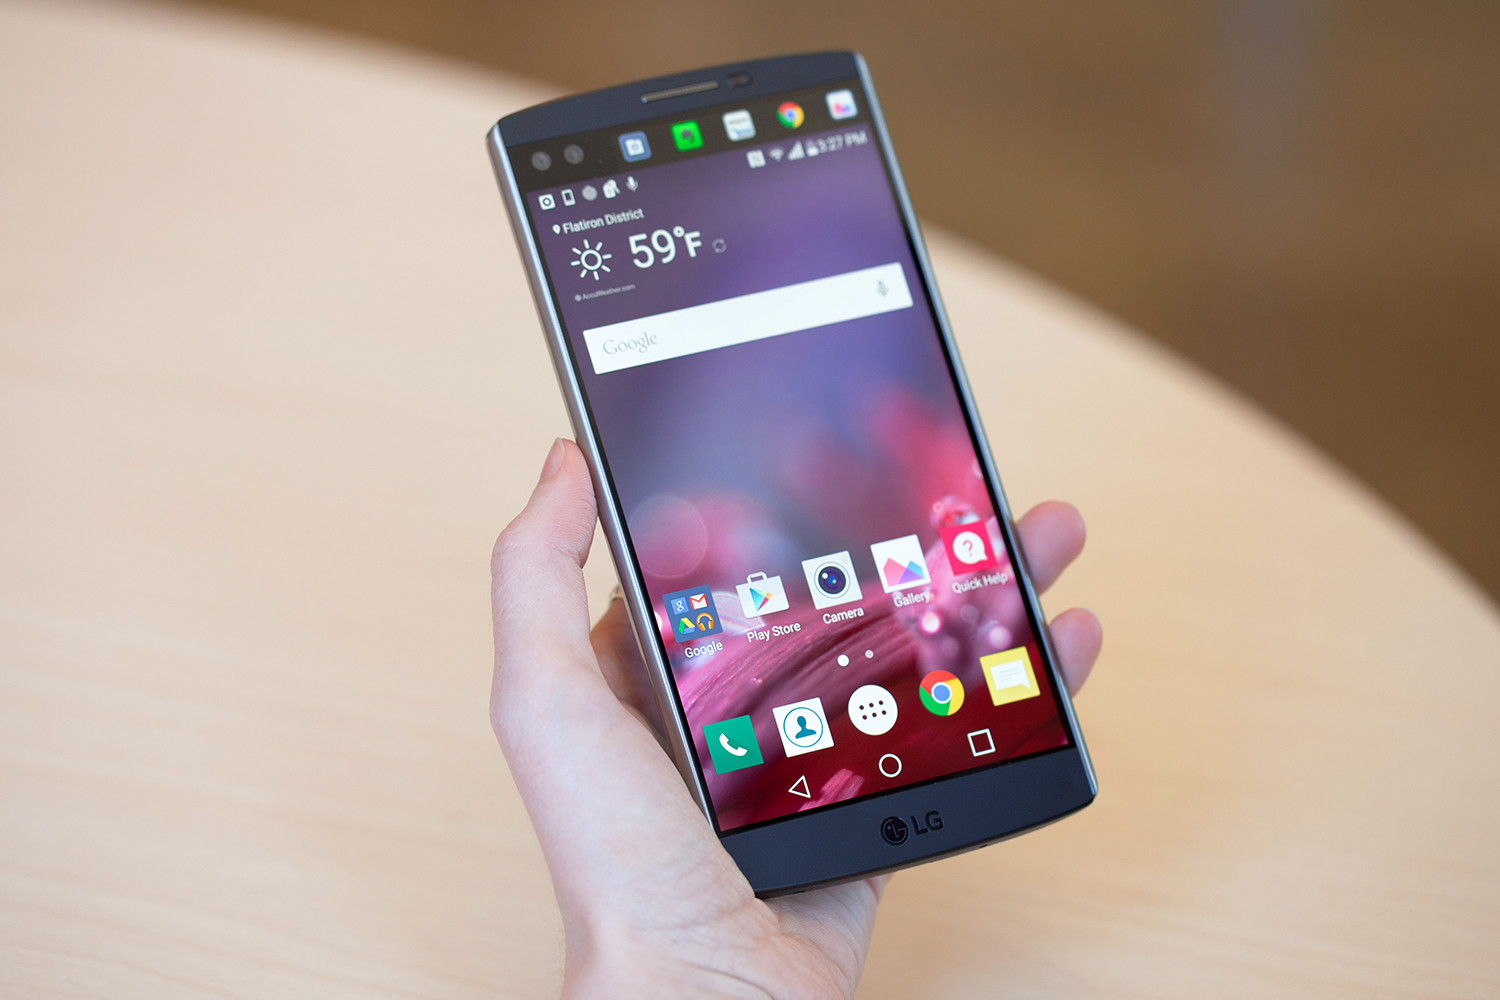 Resmi Bilgi: LG V20, Android 7.0 ile birlikte Eylül ayında geliyor